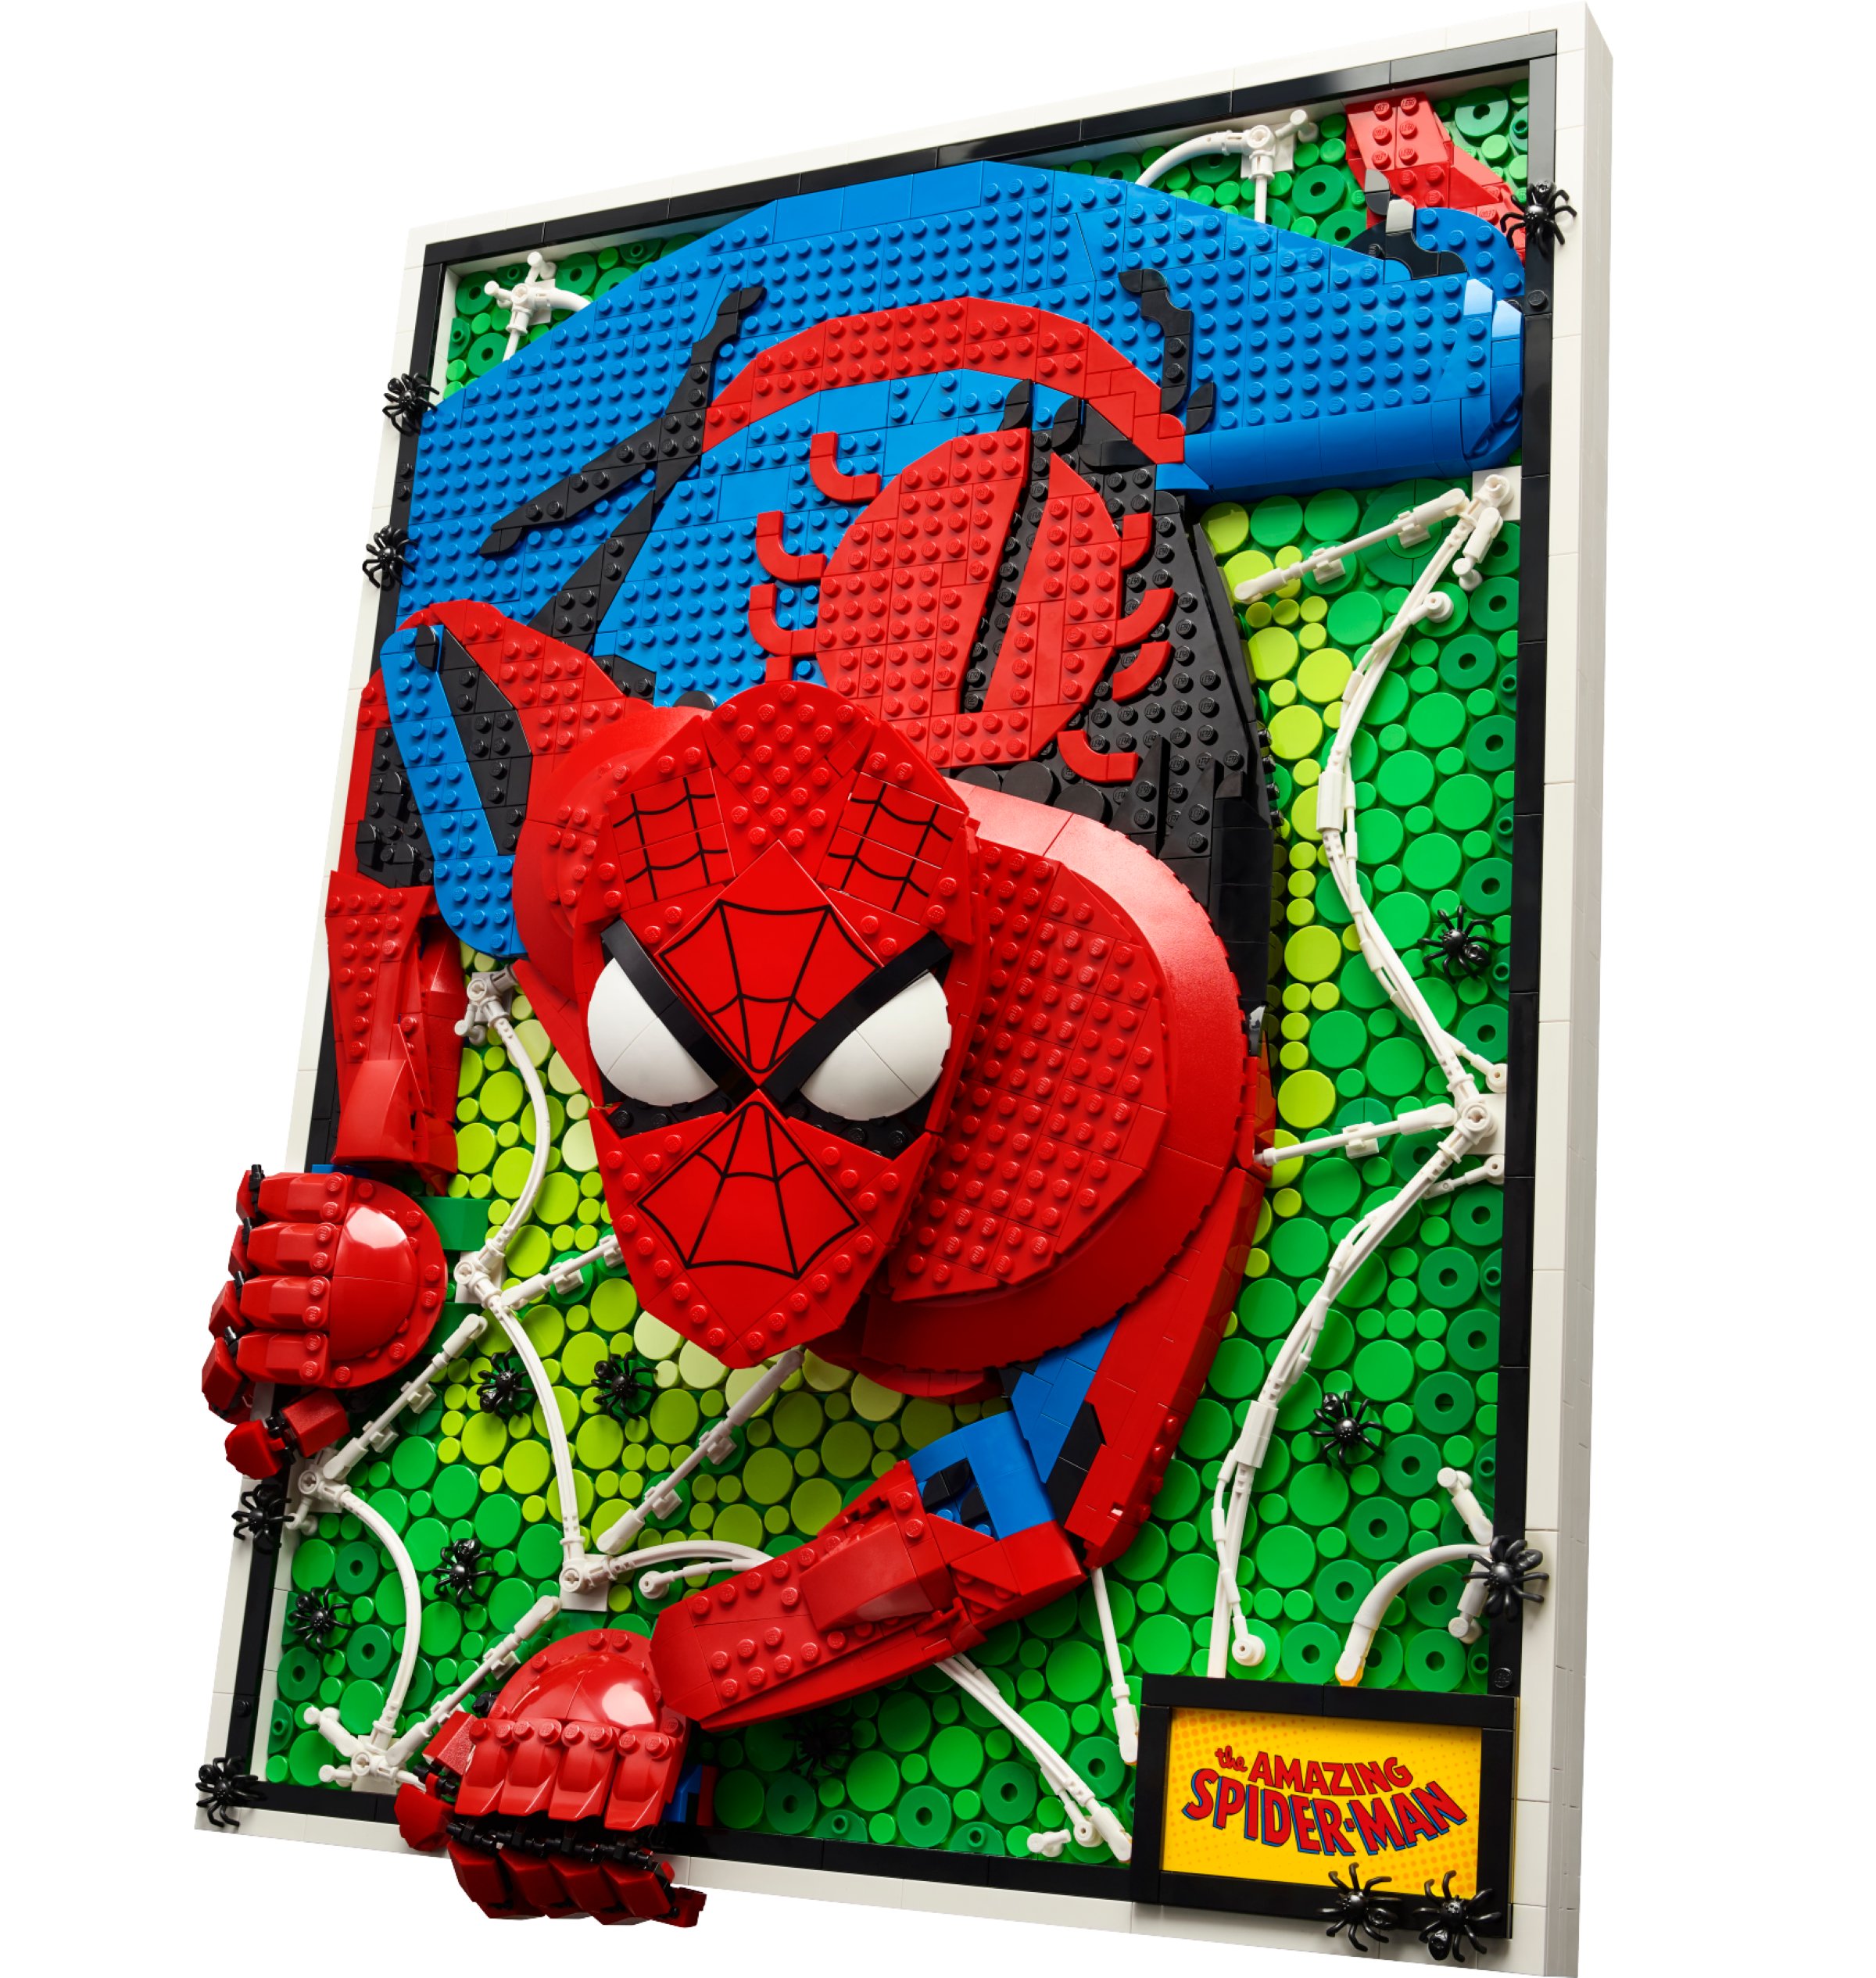 LEGO met en vente un incroyable set The Amazing Spider-Man